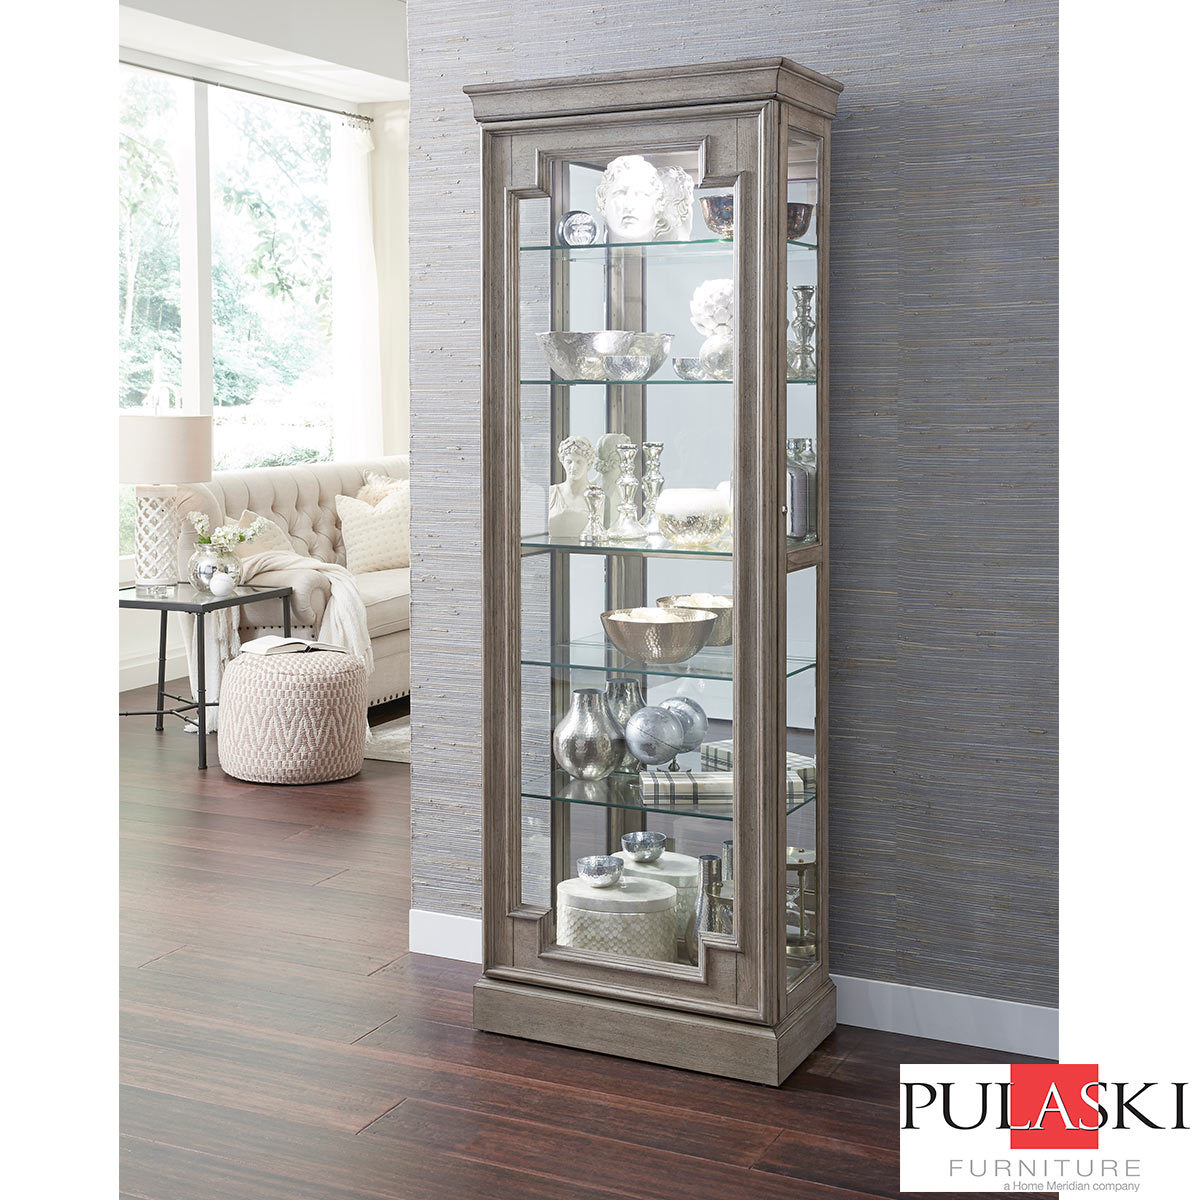 Pulaski Display Cabinet With Led Light Adjustable Glass Shelves